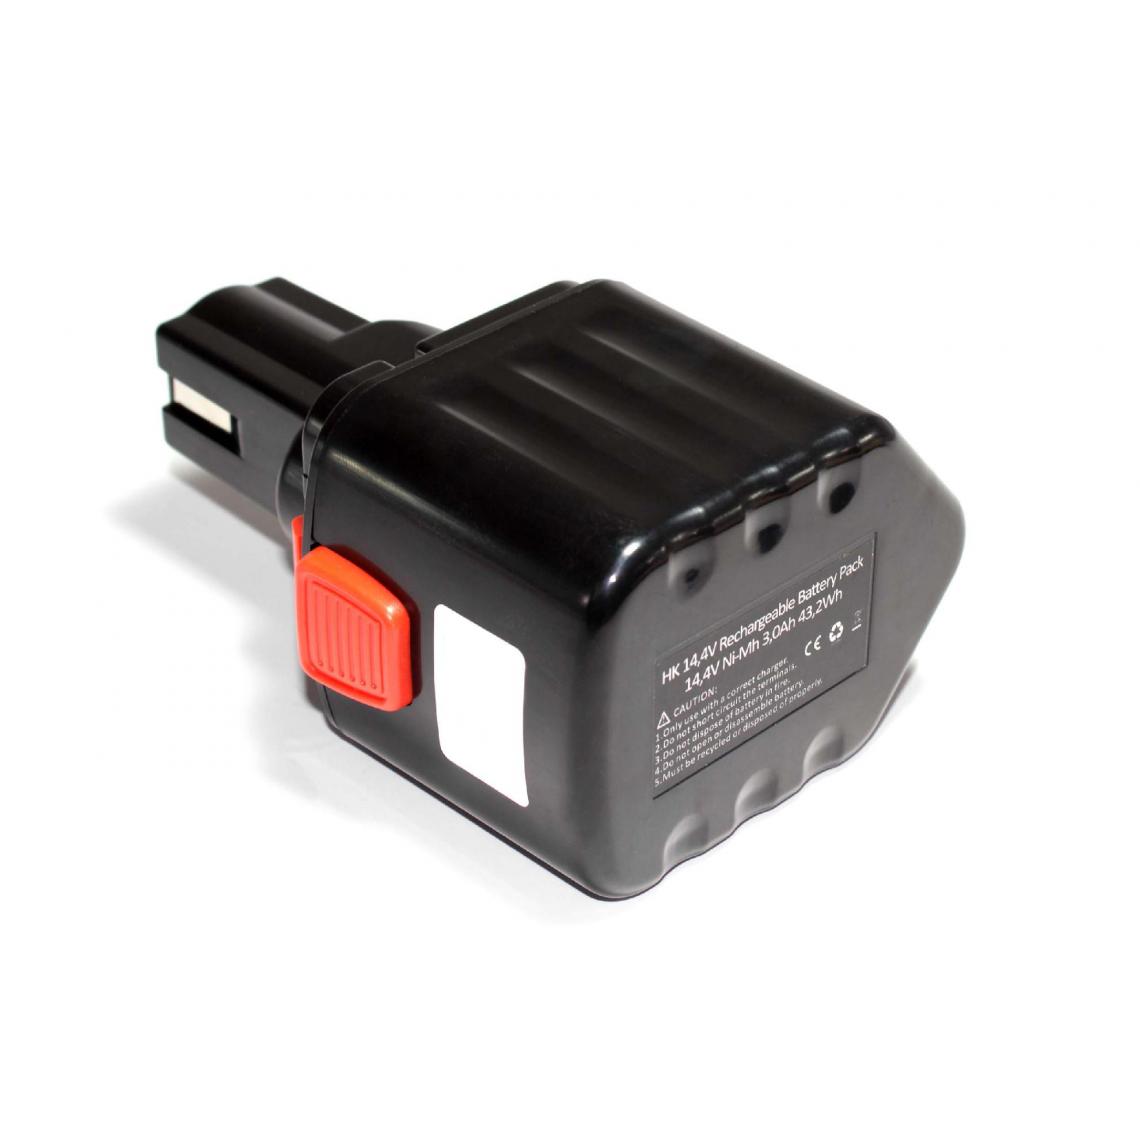 Vhbw - vhbw Batterie compatible avec Izumi REC-S13D, REC-S16C, REC-S20A, REC-S20C, REC-S24, REC-S40 outil électrique (3000mAh NiMH 14,4 V) - Accessoires vissage, perçage